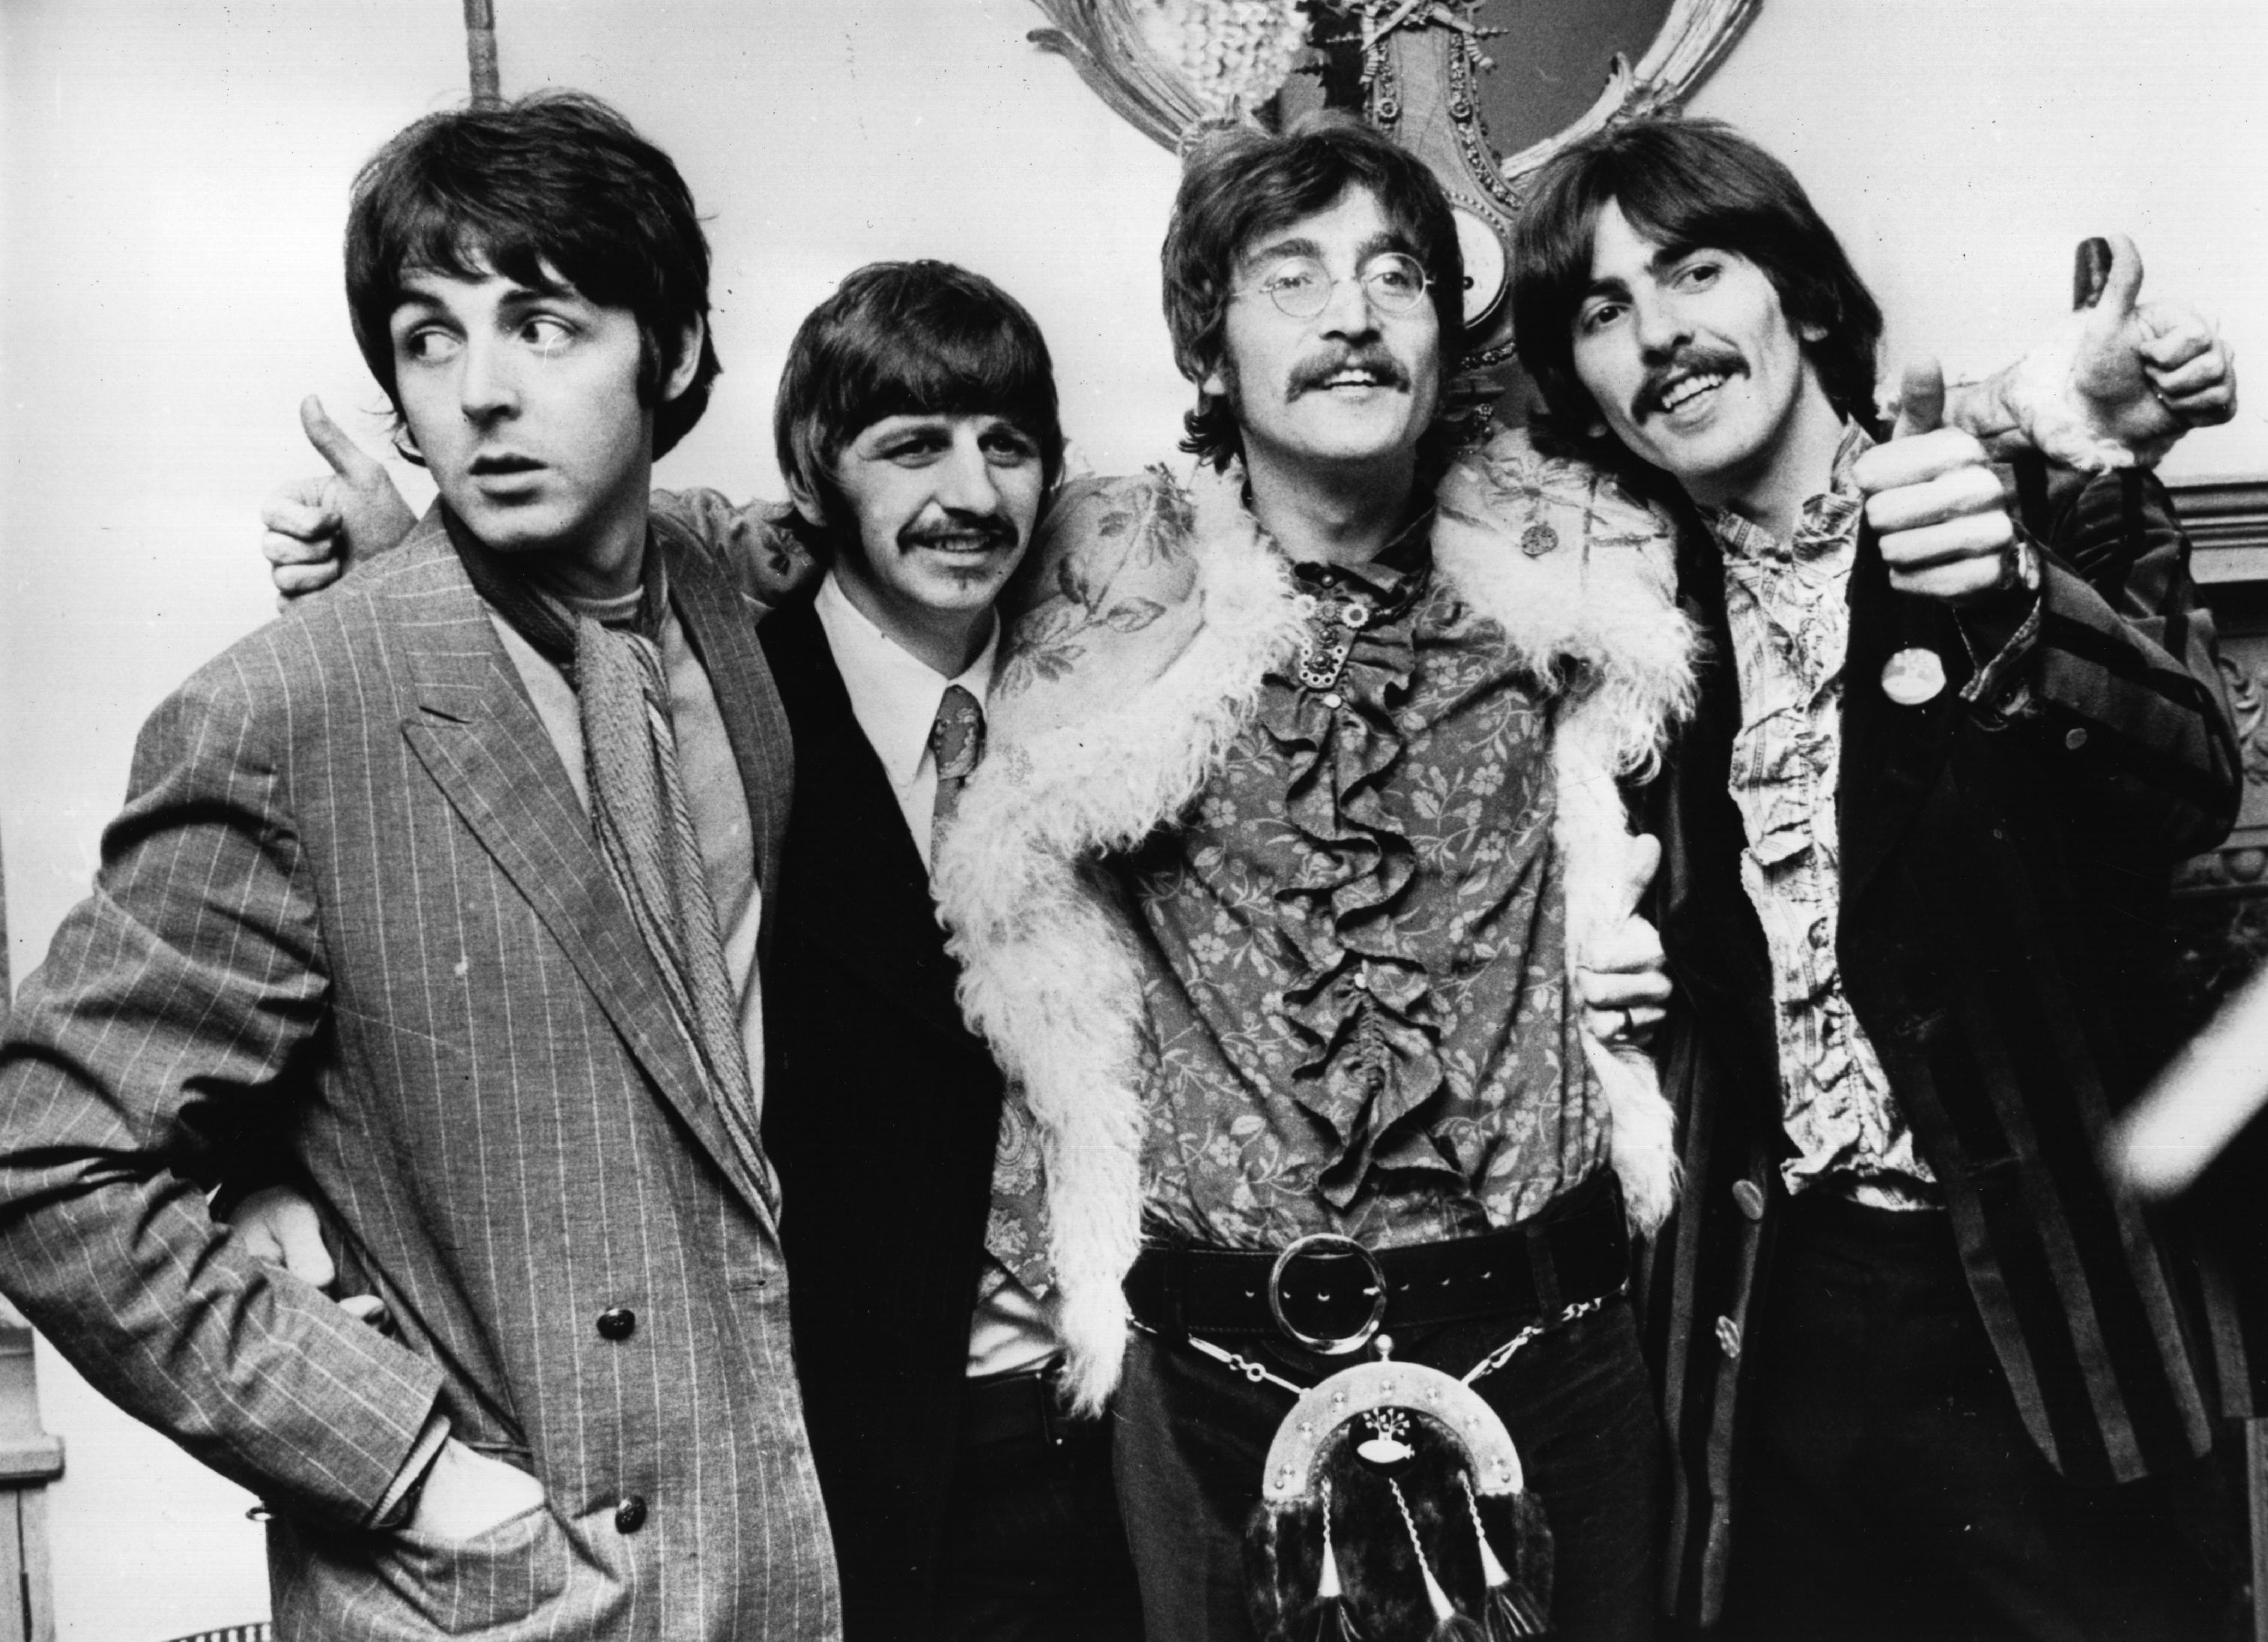 The Beatles' Paul McCartney, Ringo Starr, John Lennon, and George Harrison standing